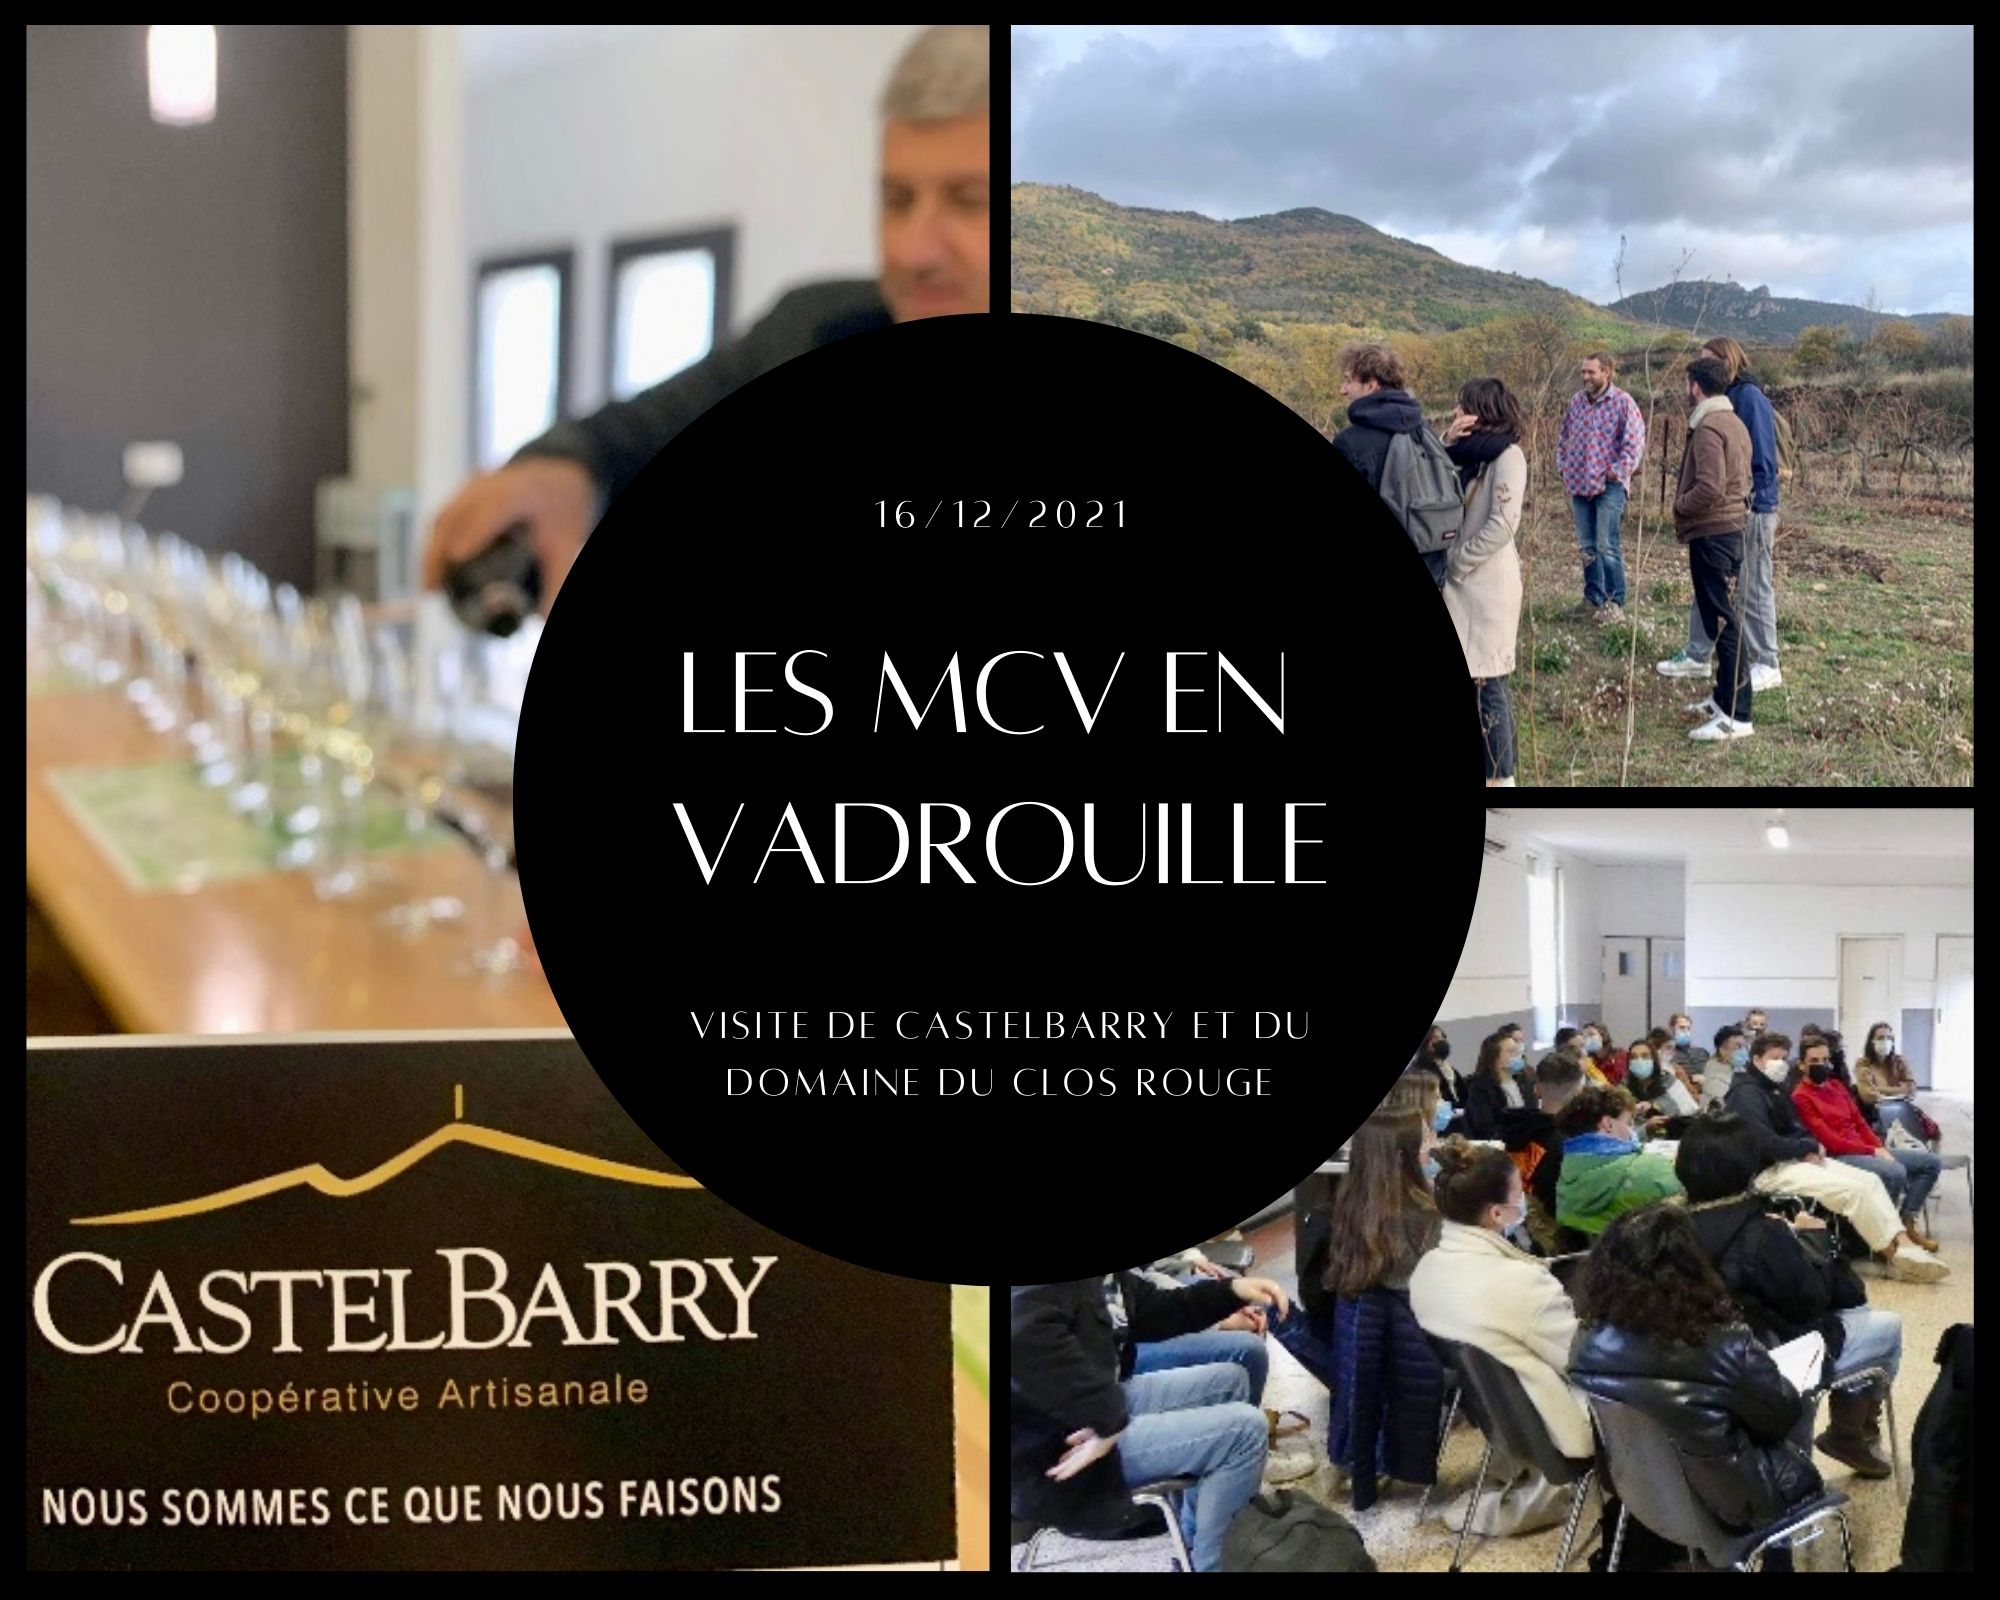 Créée en 1950, CastelBarry compte aujourd’hui 110 vignerons adhérents et propose une gamme de vins allant de l’IGP Saint Guilhem du Désert à l’AOC Languedoc Montpeyroux